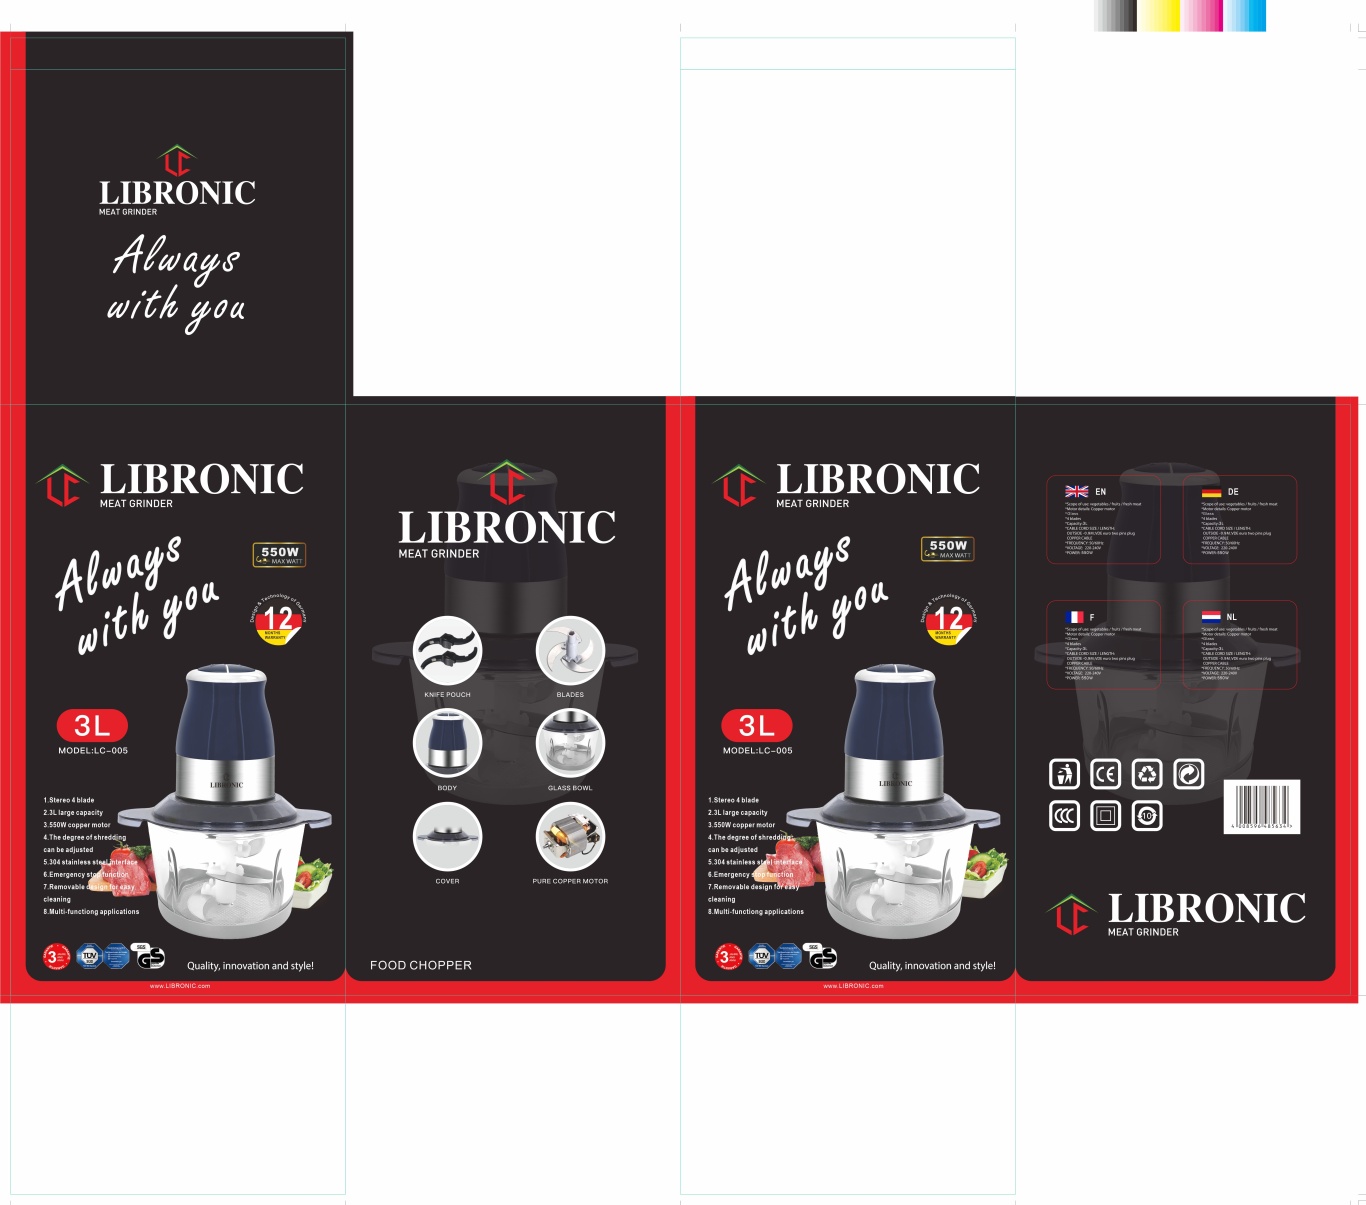 LIBRONIC品牌的绞肉机料理器黑色包装图2